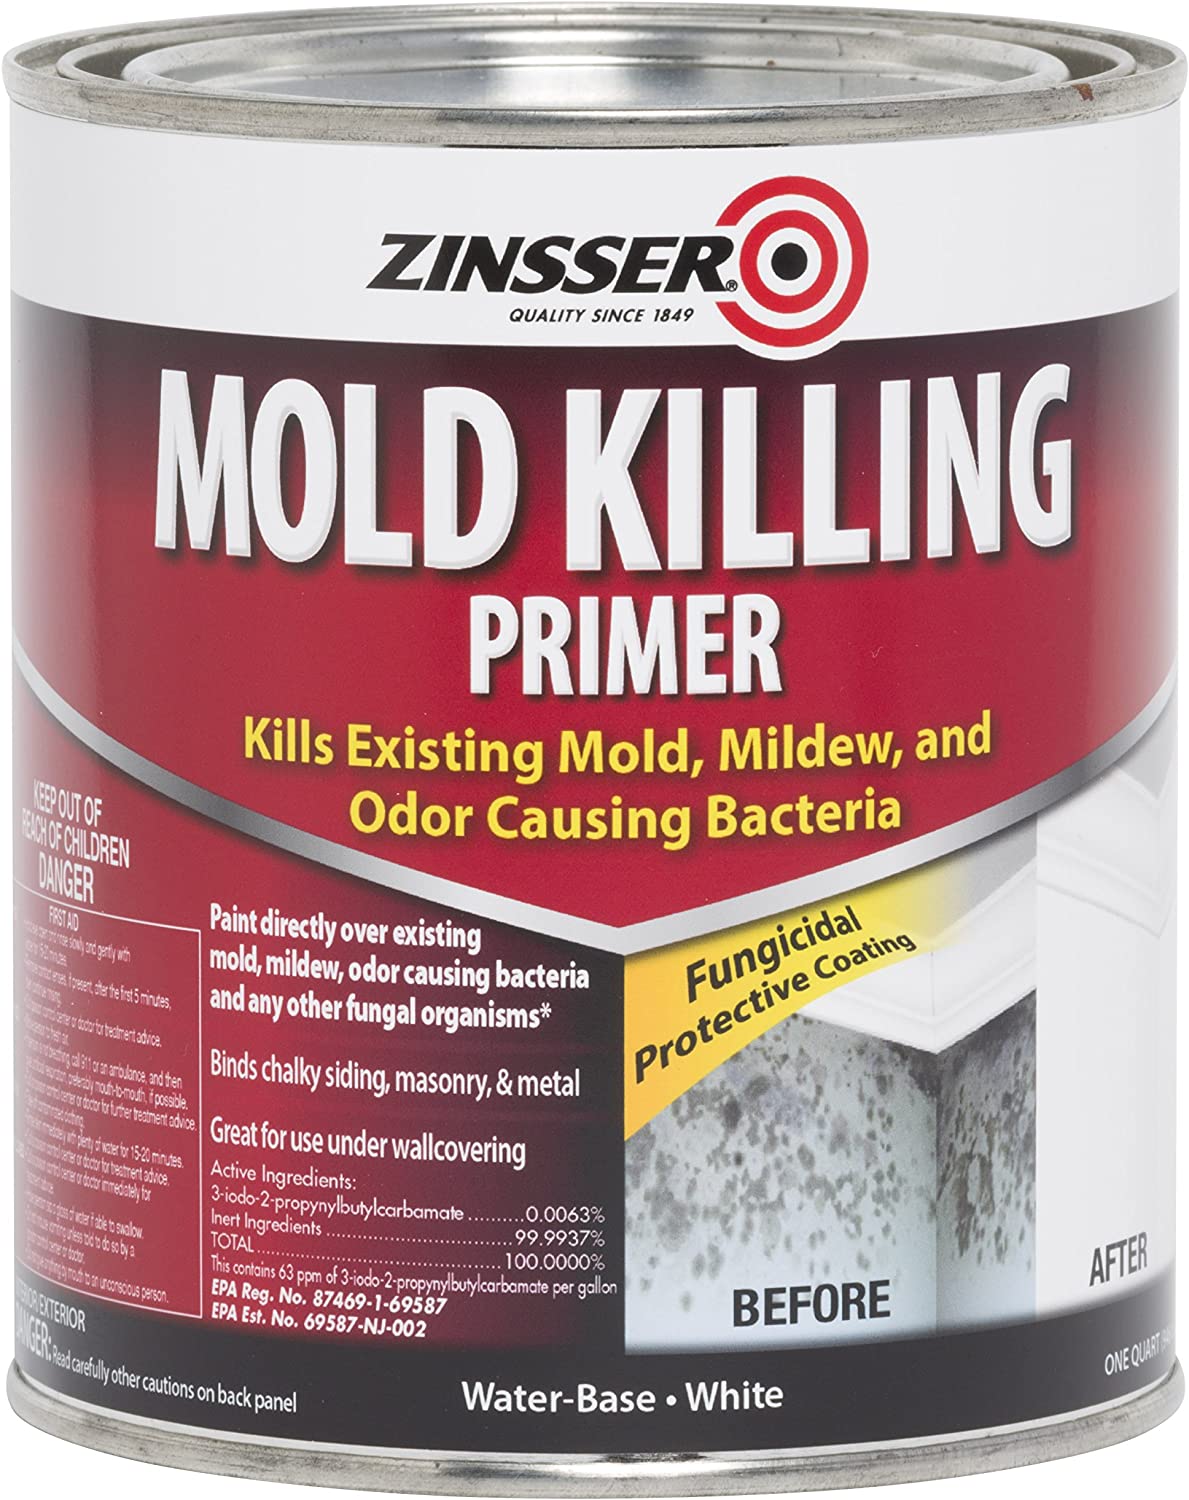 Zinsser 276087 Mold Killing Primer, Quart, White - image 1 of 7